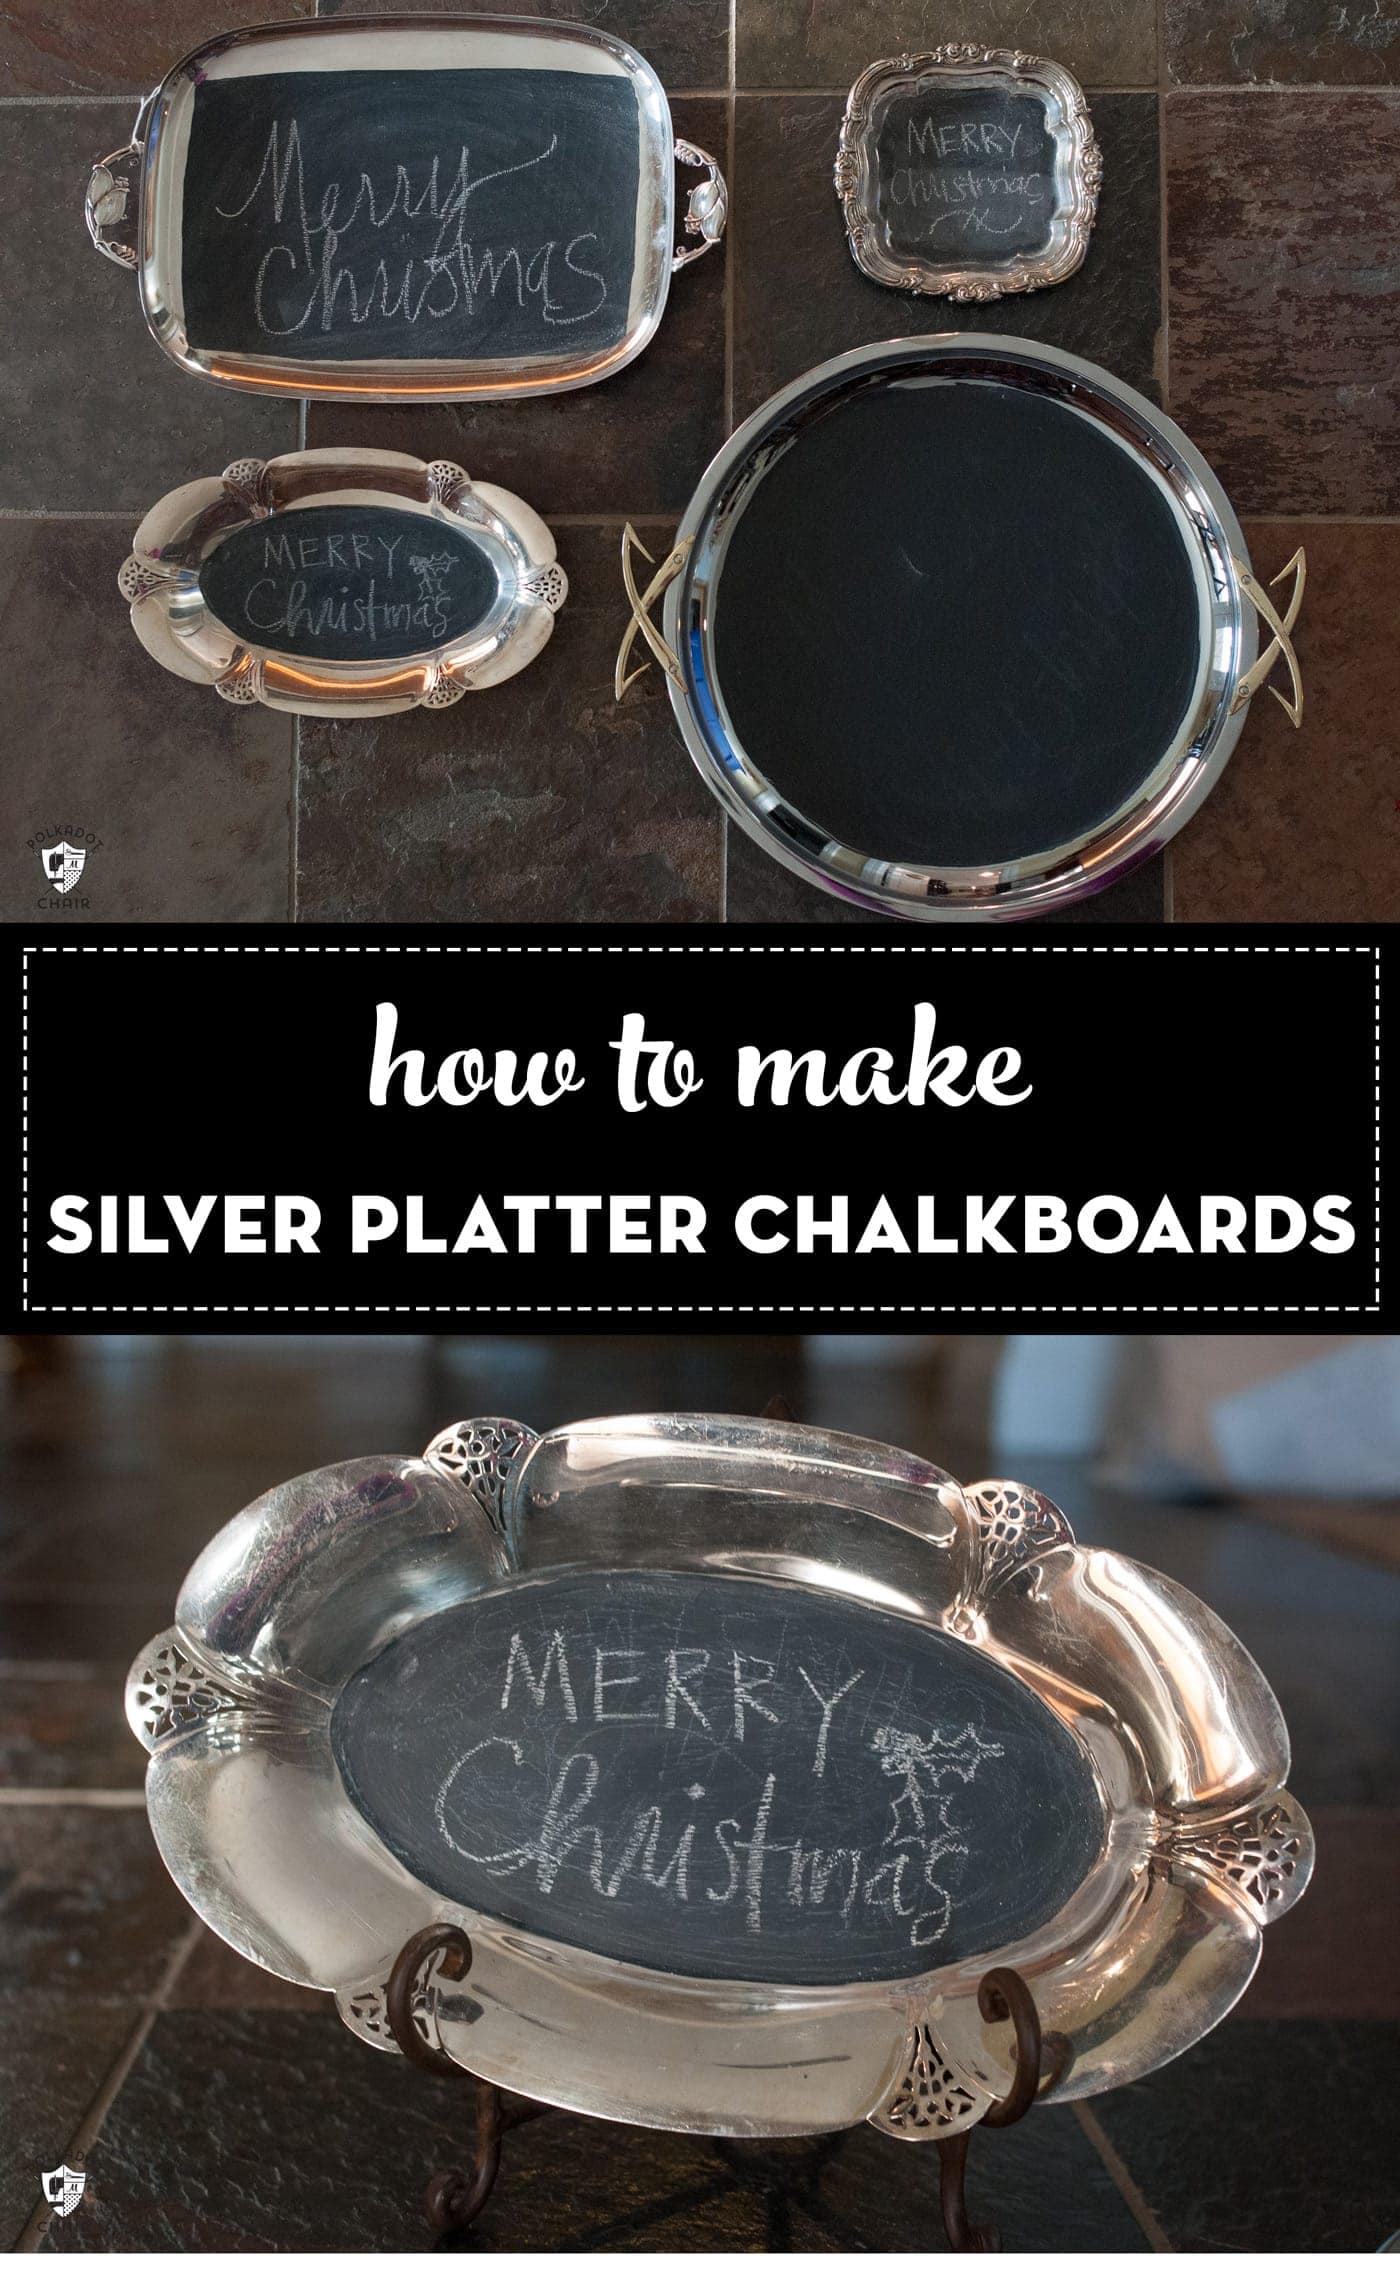 Silver platter chalkboard